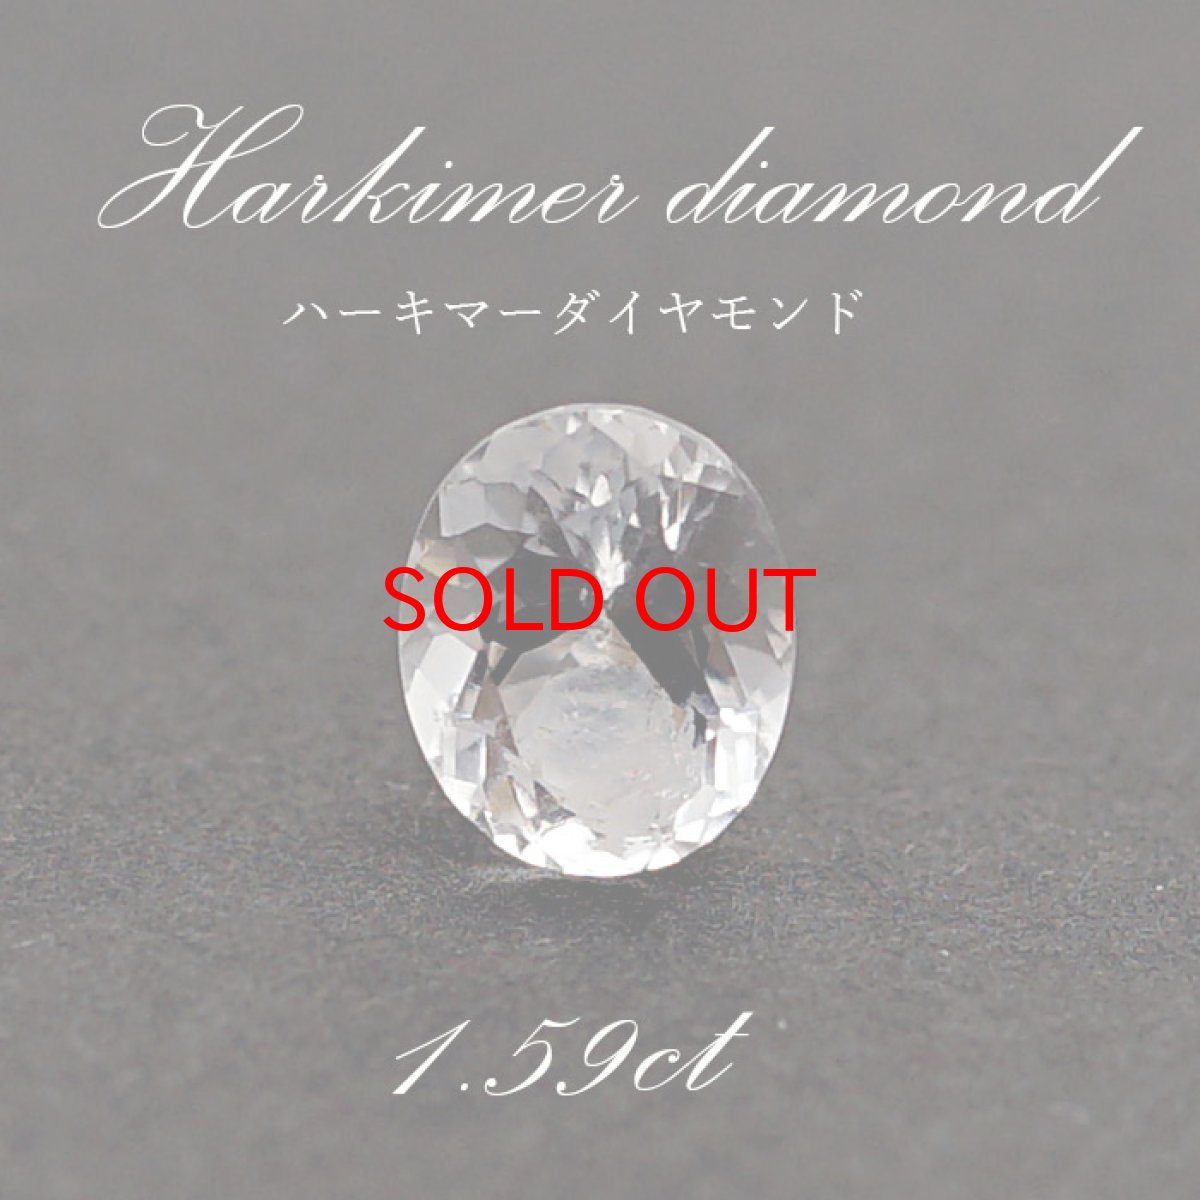 画像1: ハーキマーダイヤモンド ルース 【 一点もの 】アメリカ産 1.59ct Harkimer diamond ハーキマー水晶 天然石 パワーストーン 【 送料無料 】 (1)